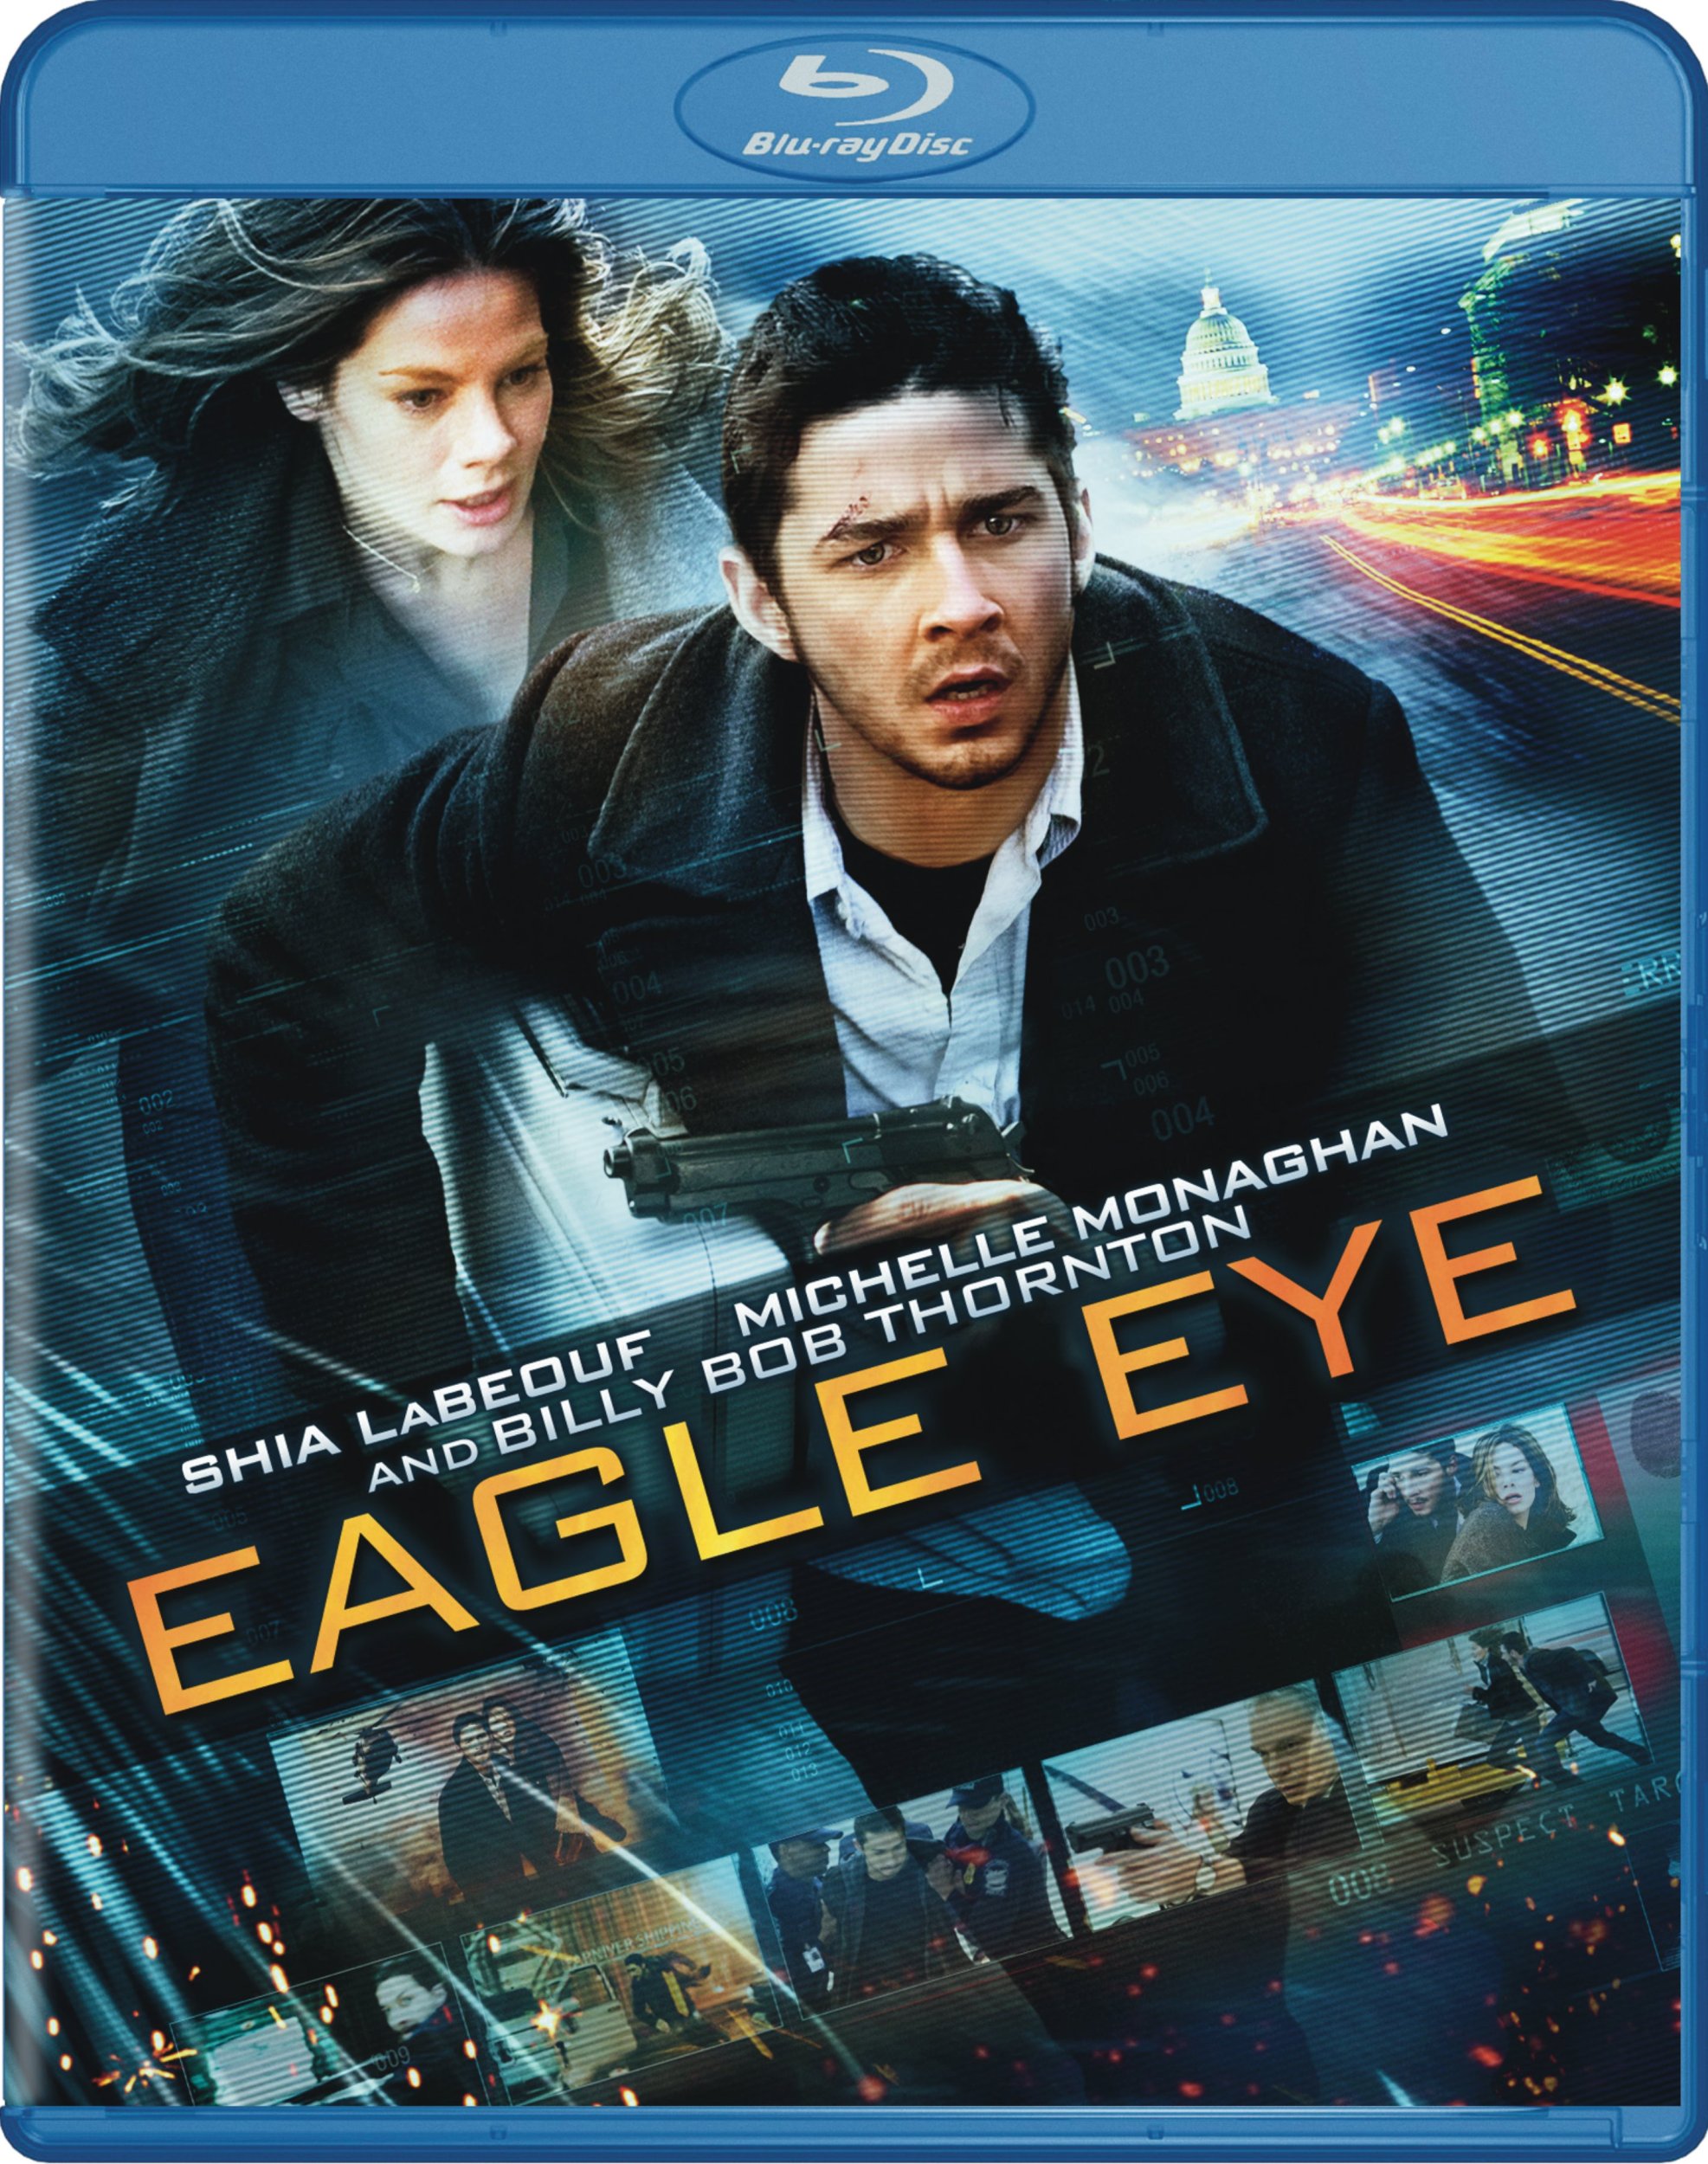 Eagle Eye DVD Release Date December 27, 2008